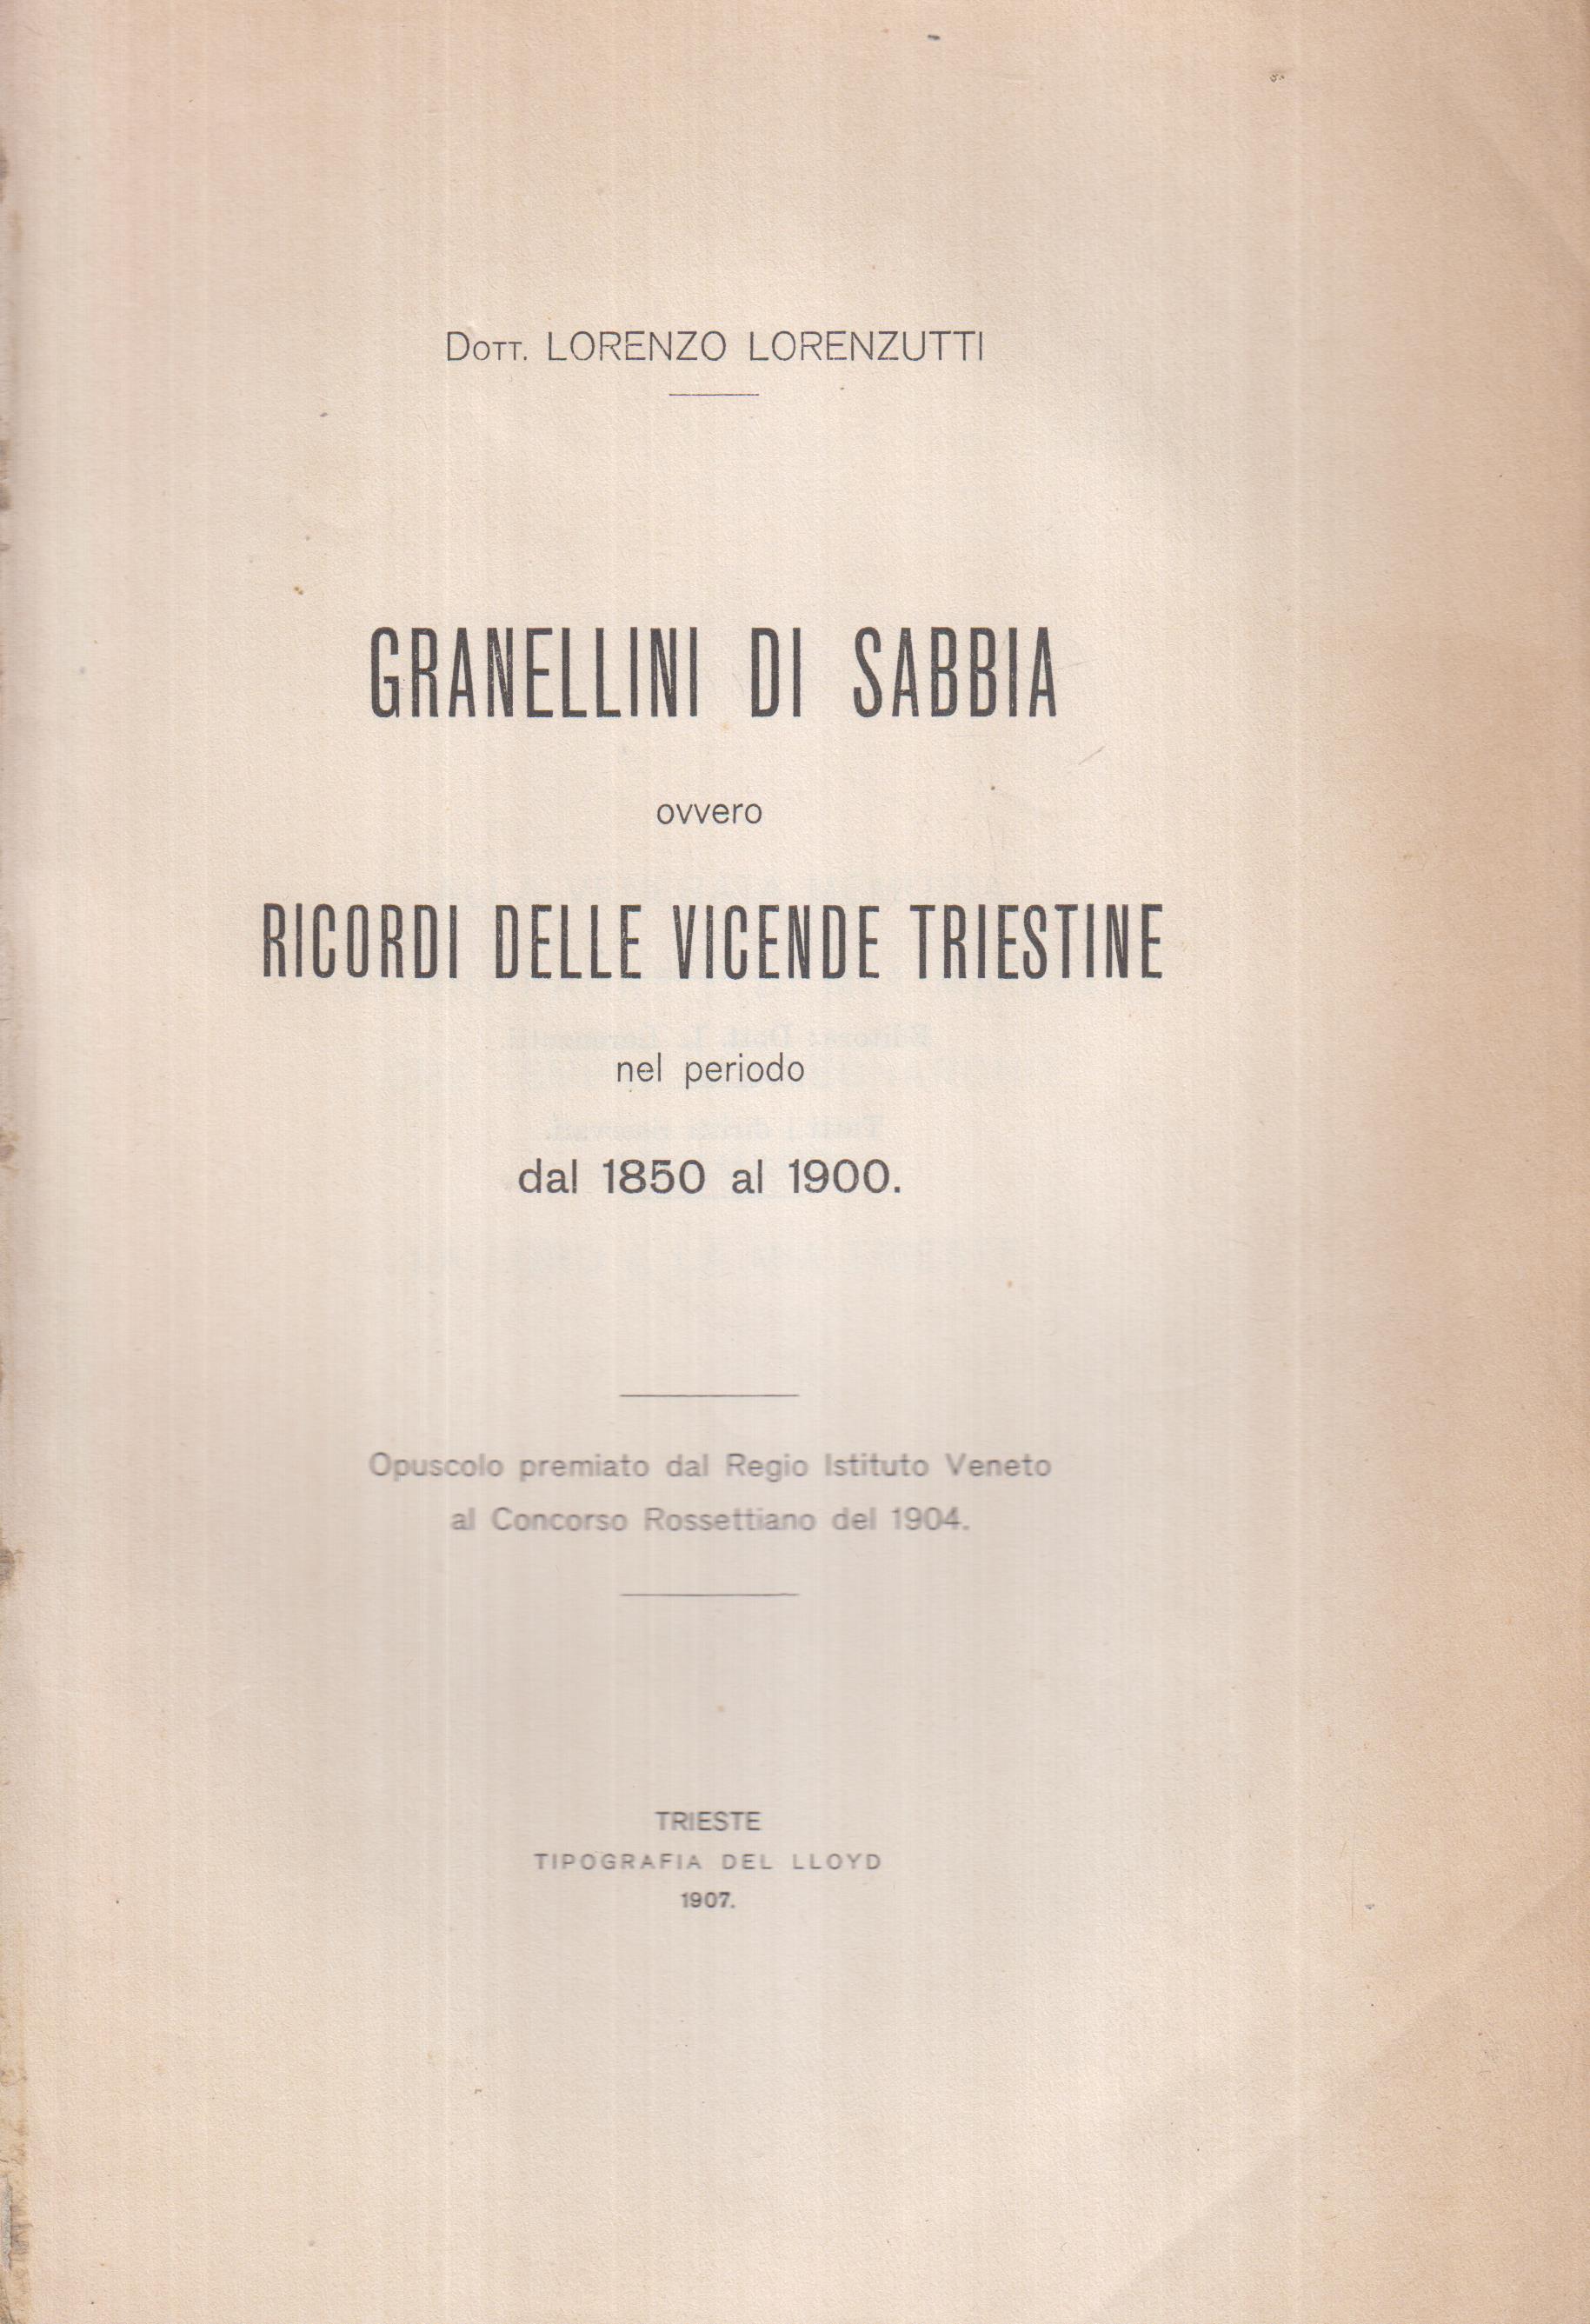 GRANELLI DI SABBIA ovvero RICORDI DELLE VICENDE TRIESTINE nel periodo dal 1850 al 1900